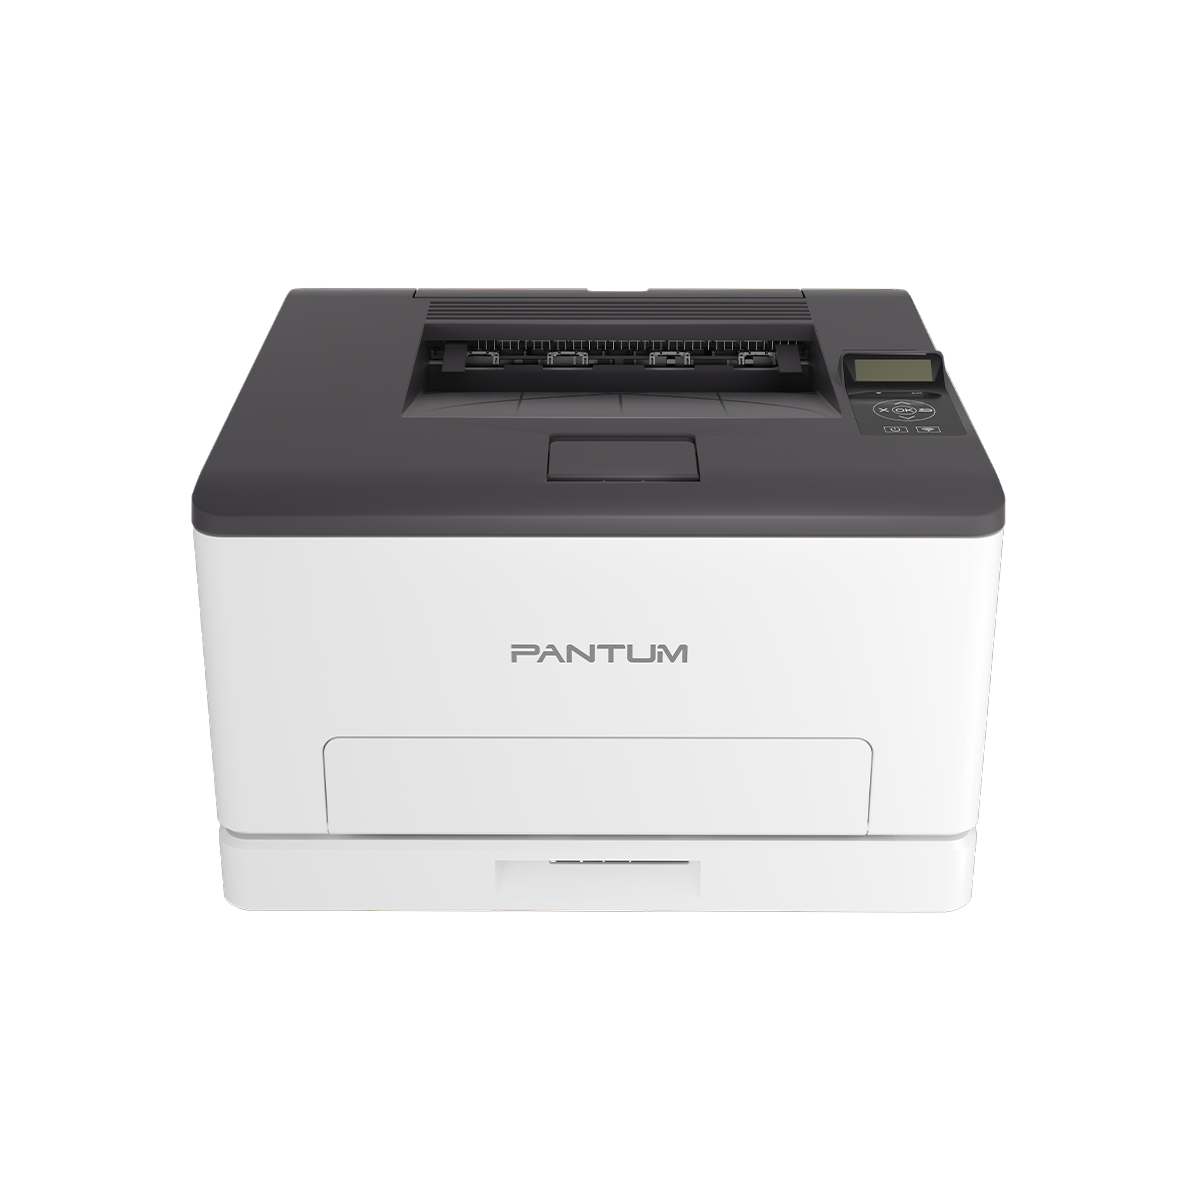 PANTUM CP1100DW krāsu lāzerprinteris ar drukas ātrumu 18 lapas minūtē gan melnbalti, gan krāsaini. WiFi savienojums.